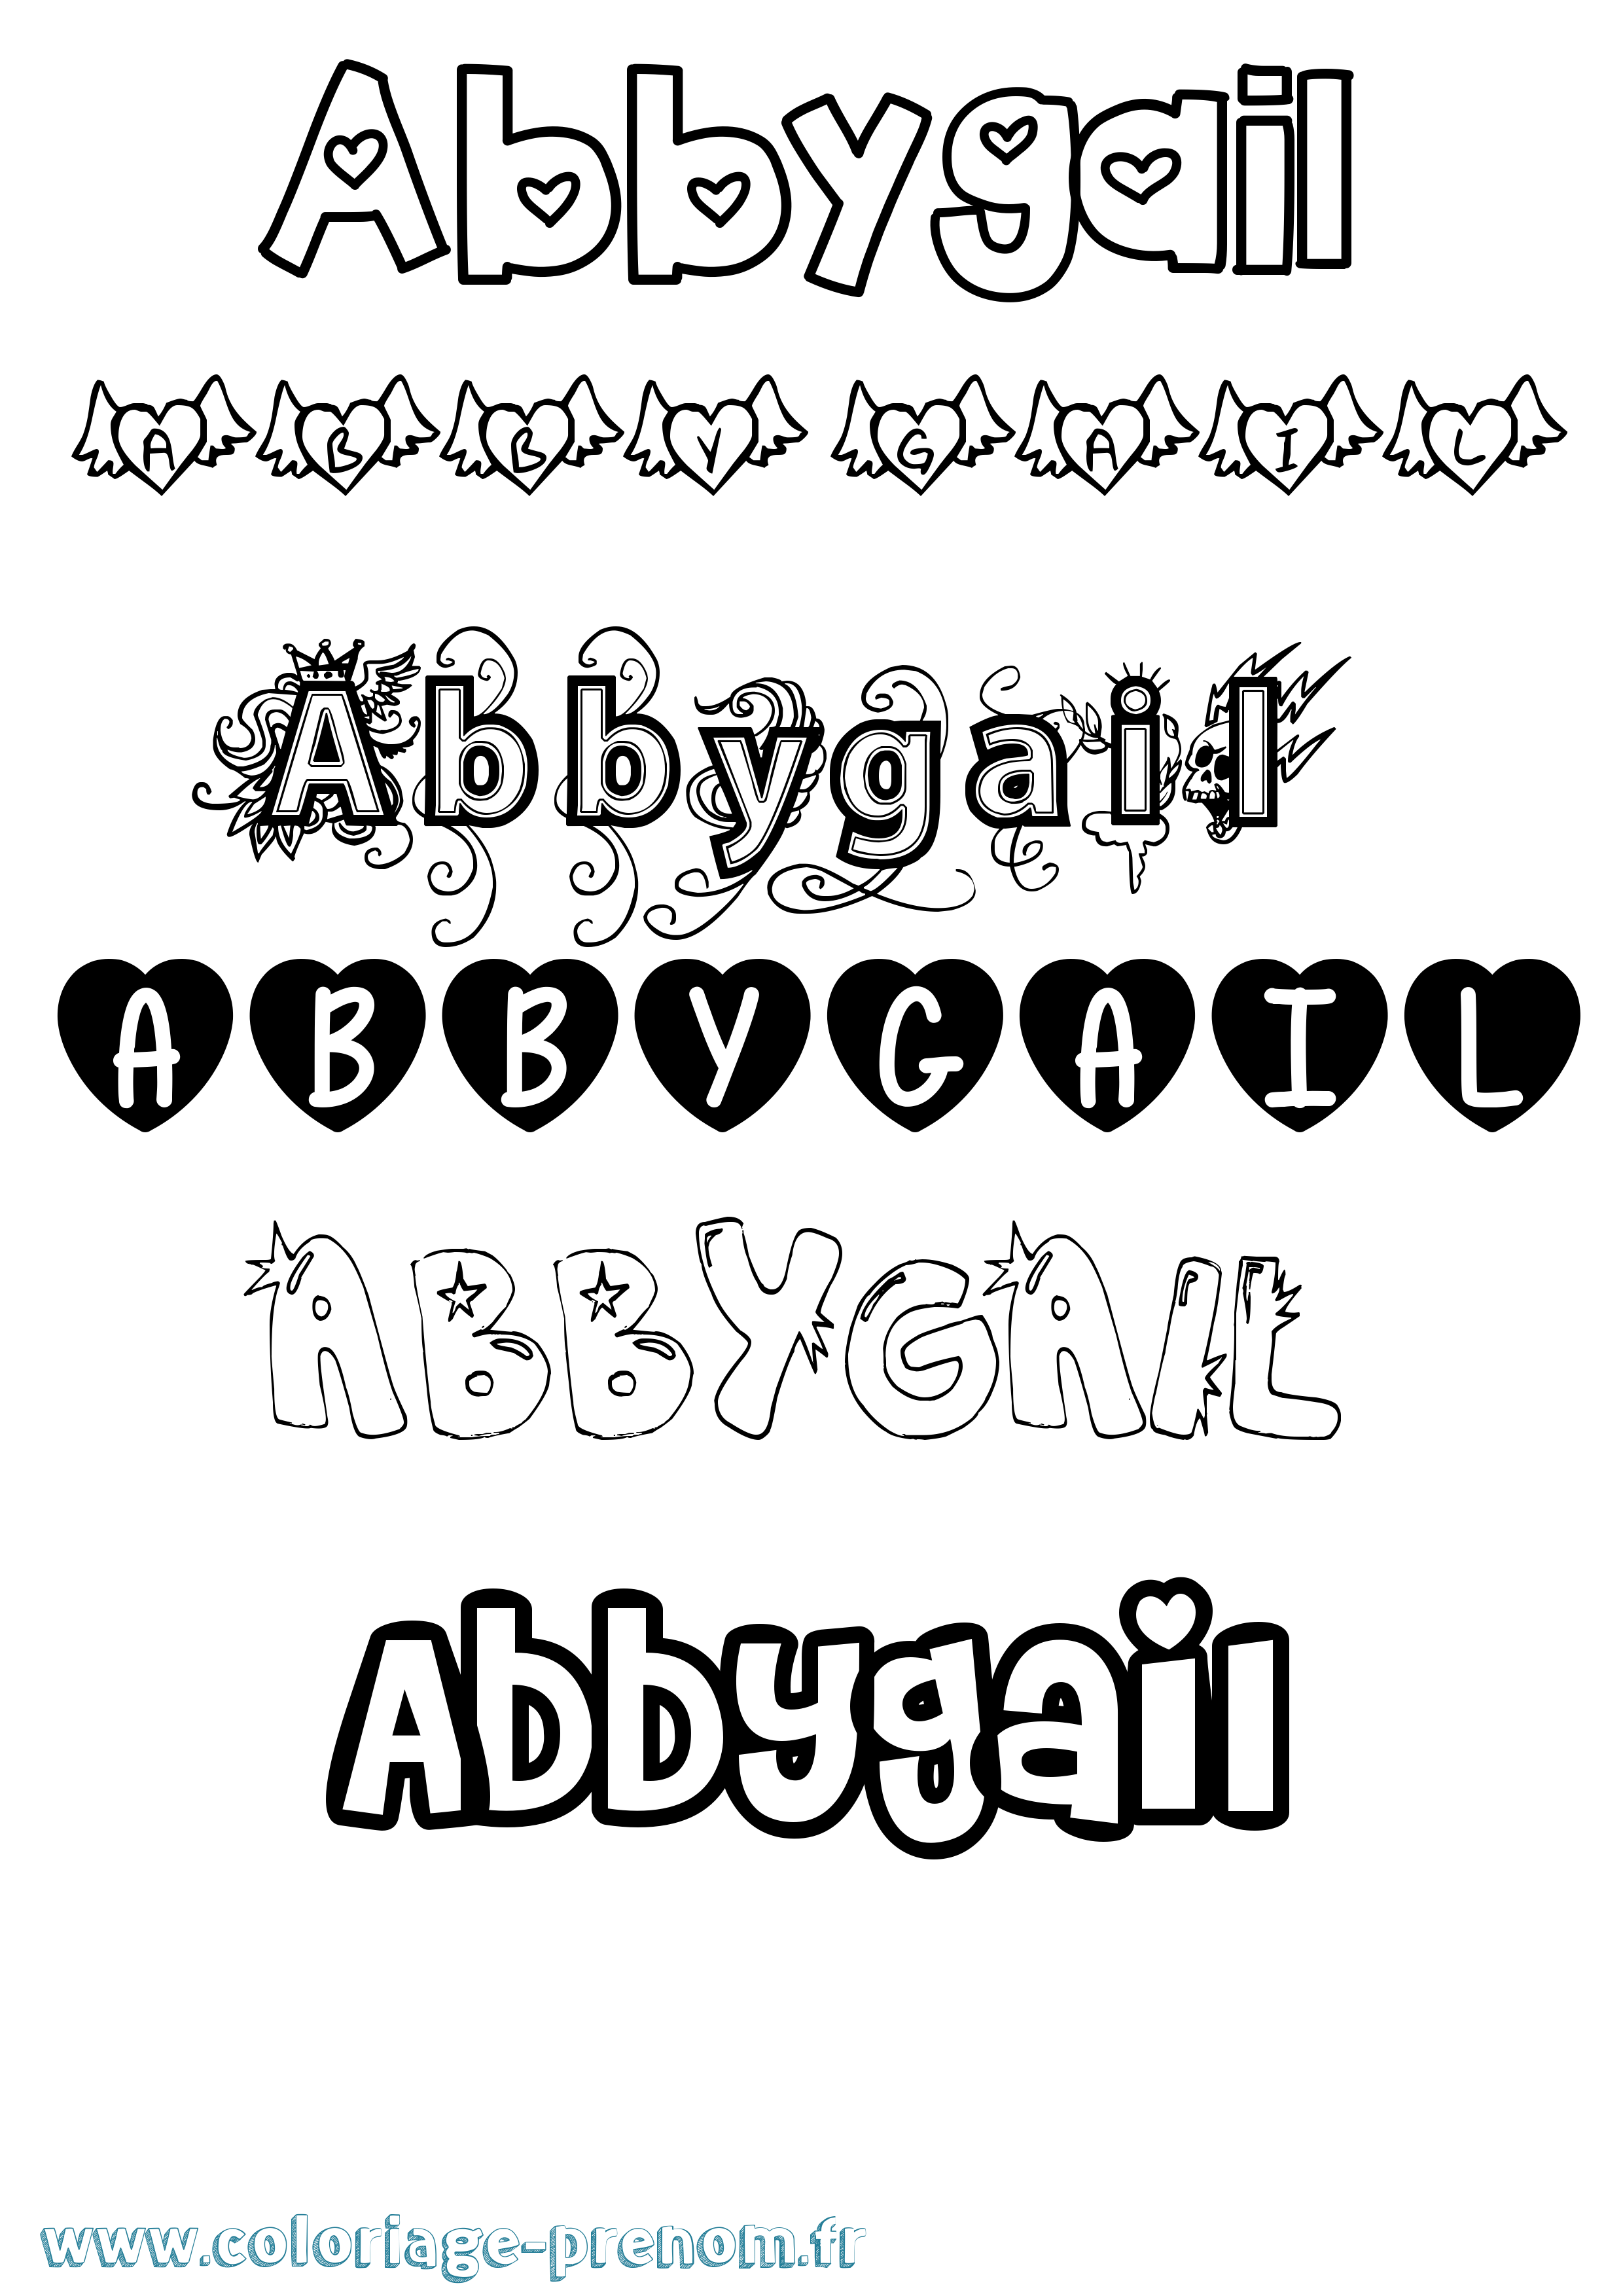 Coloriage prénom Abbygail Girly